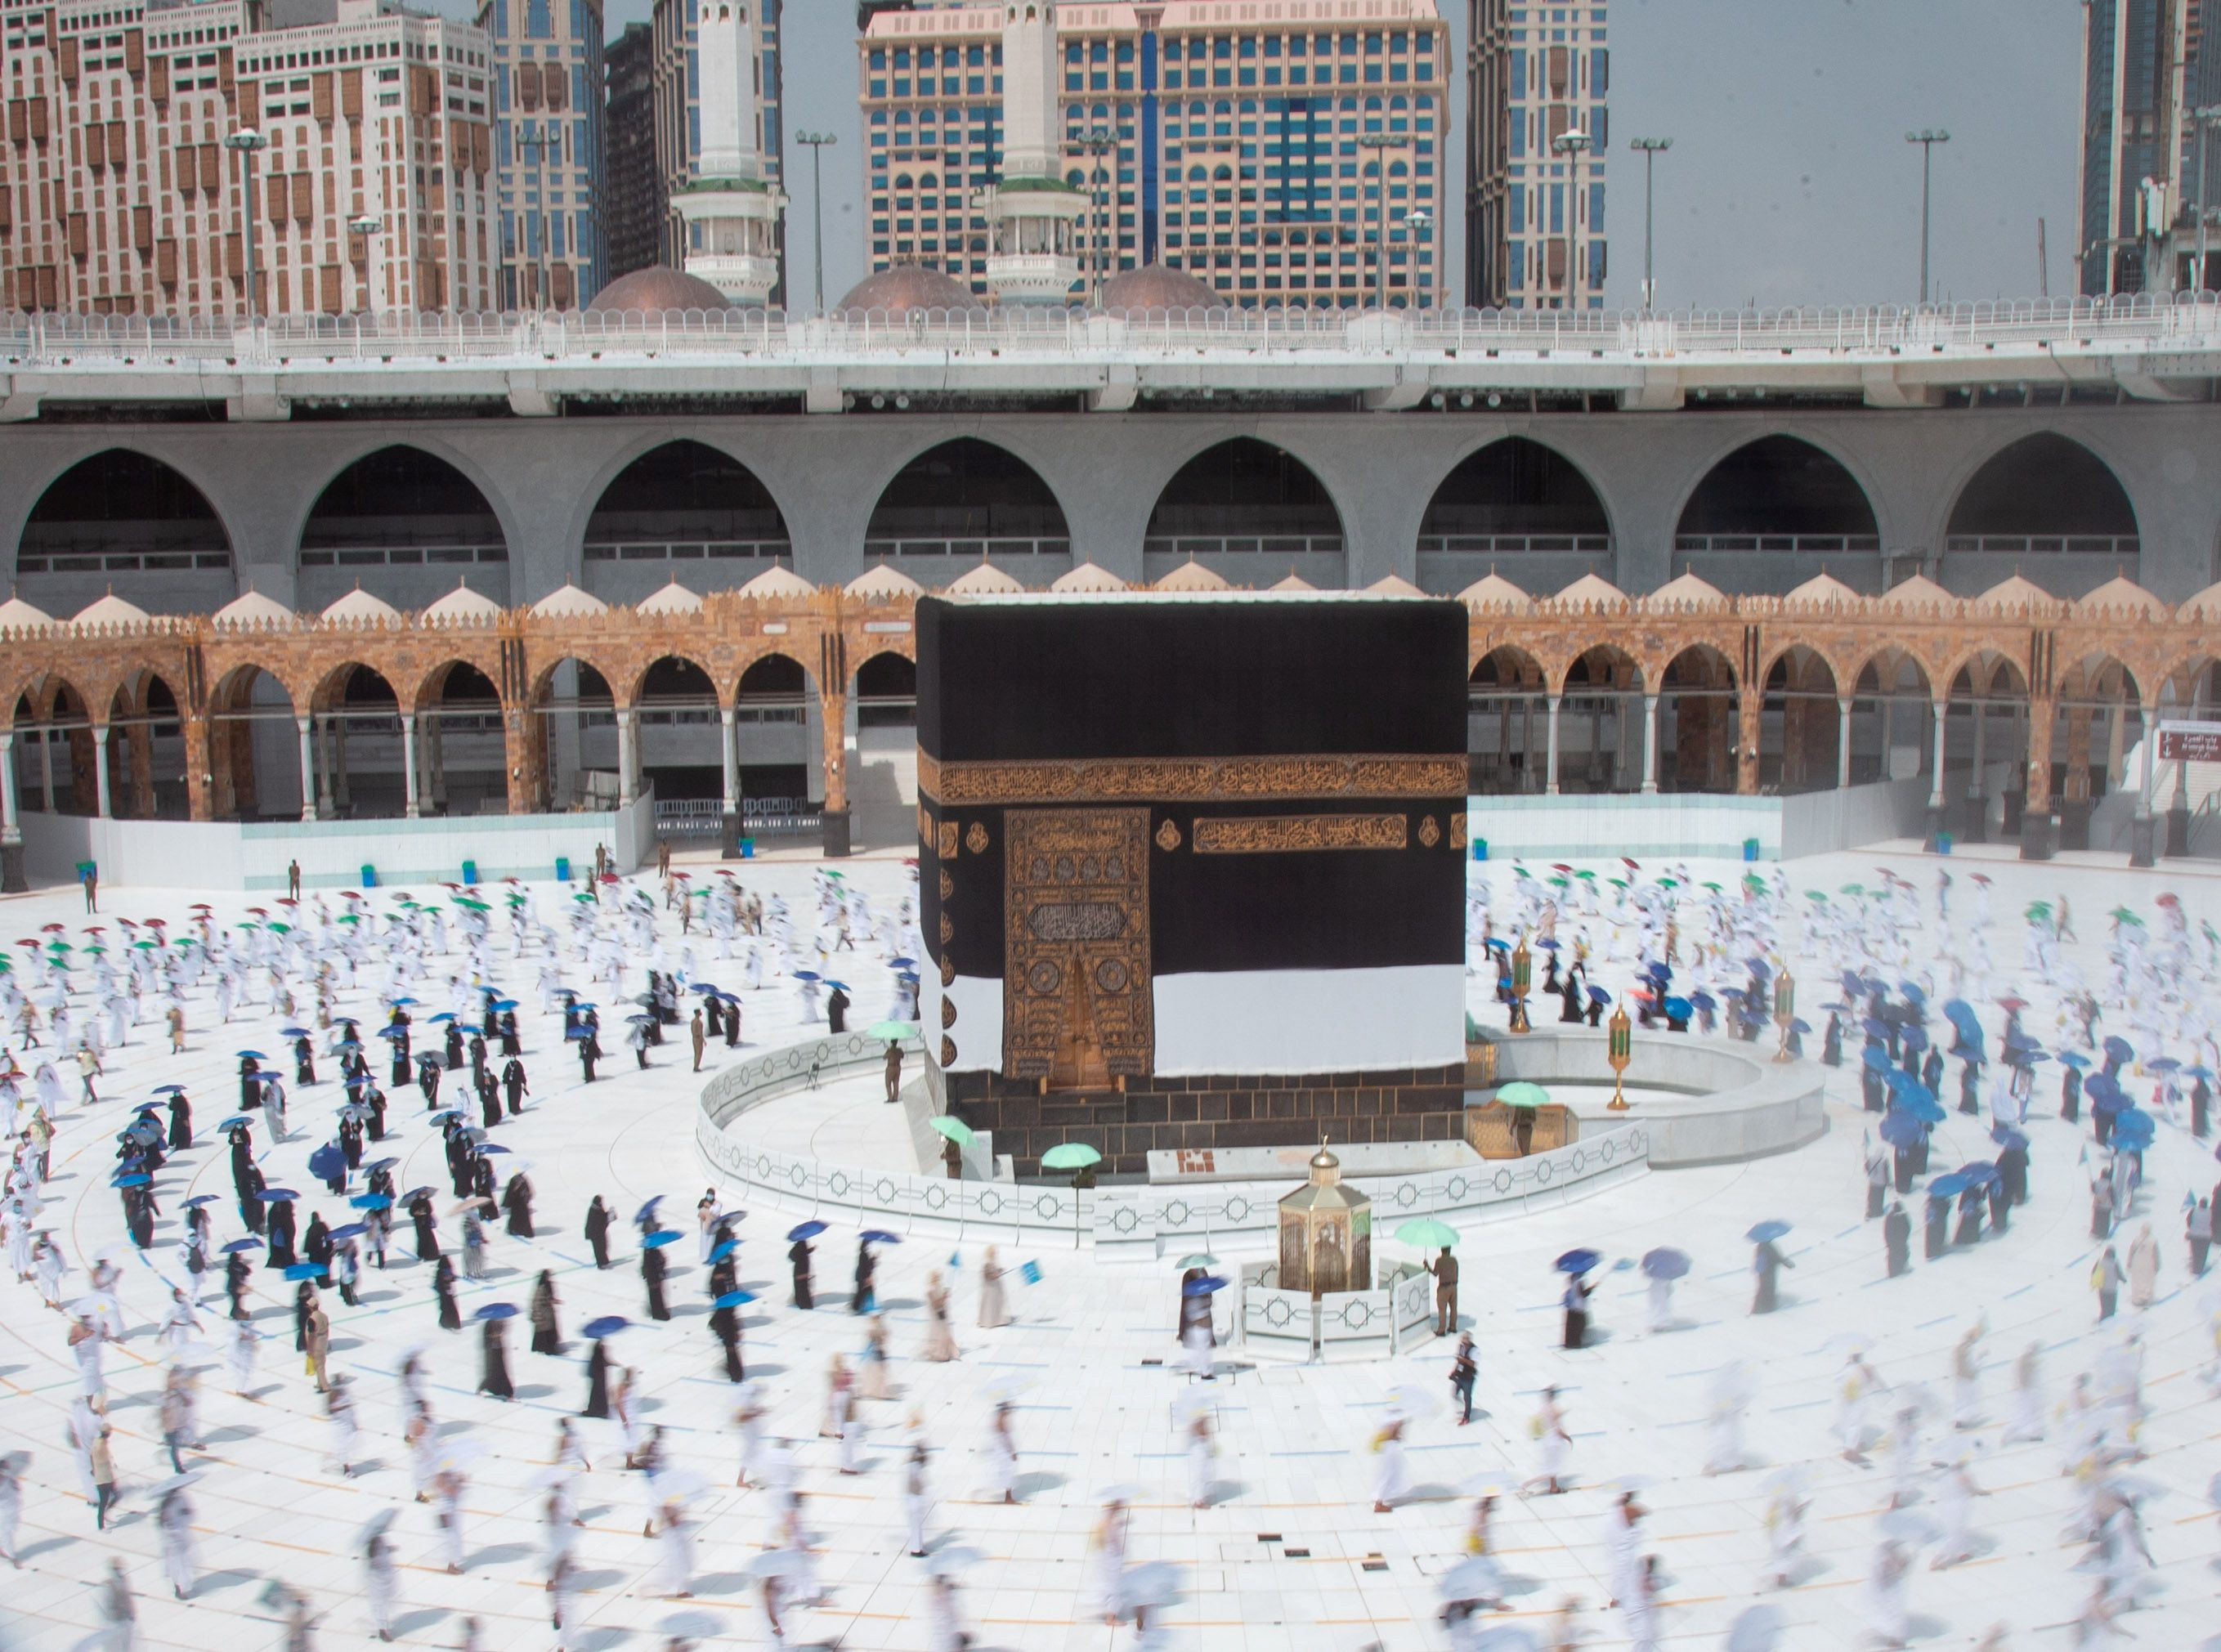 La peregrinación a La Meca durante ramadán contará con una nueva restricción